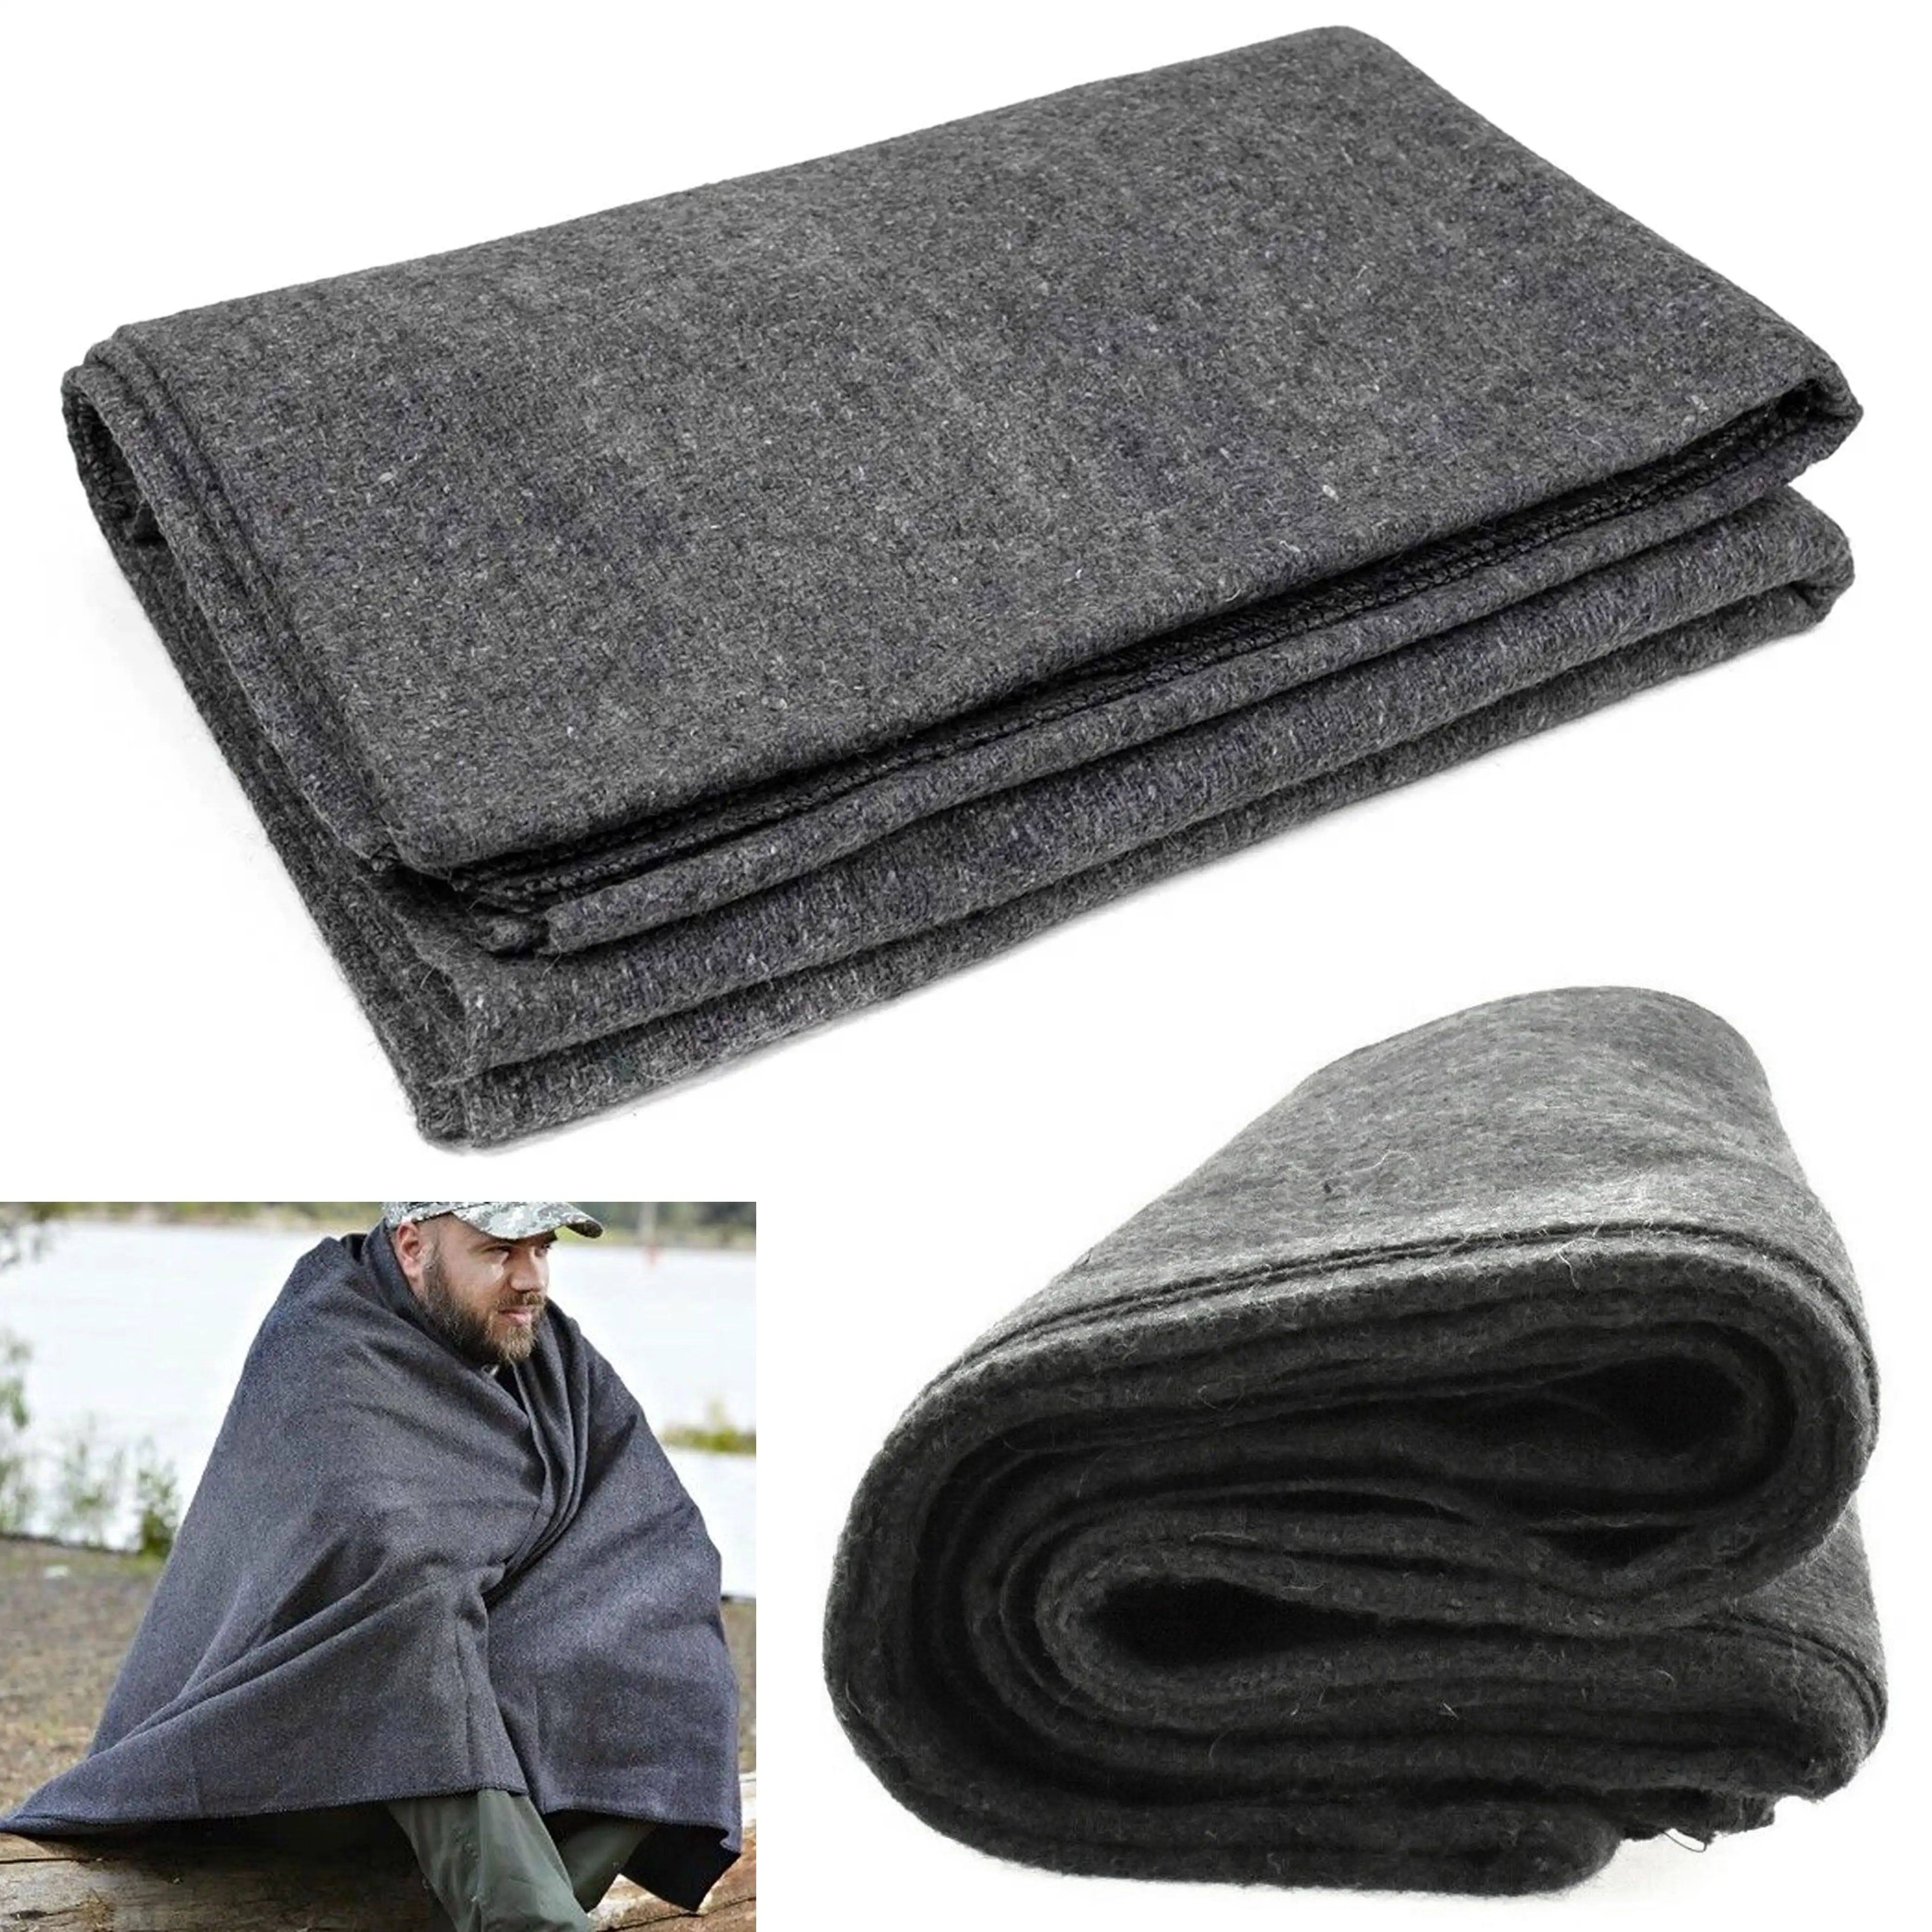 

1 теплое шерстяное зимнее тяжелое большое одеяло, военный кемпинг, выживание в экстренных ситуациях 80 дюймов